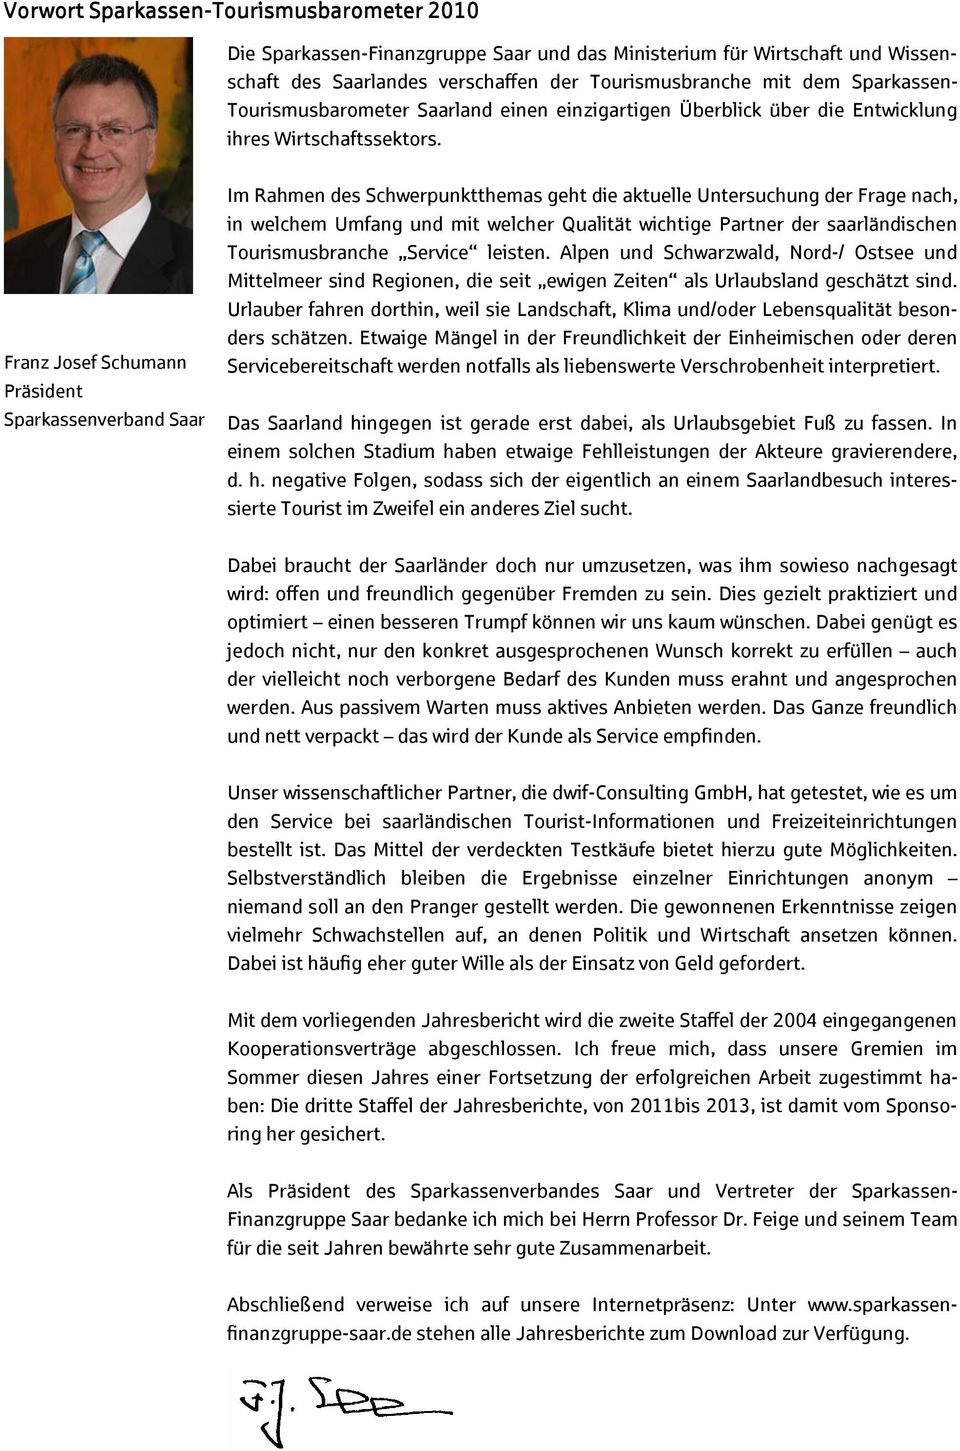 Franz Josef Schumann Präsident Sparkassenverband Saar Im Rahmen des Schwerpunktthemas geht die aktuelle Untersuchung der Frage nach, in welchem Umfang und mit welcher Qualität wichtige Partner der